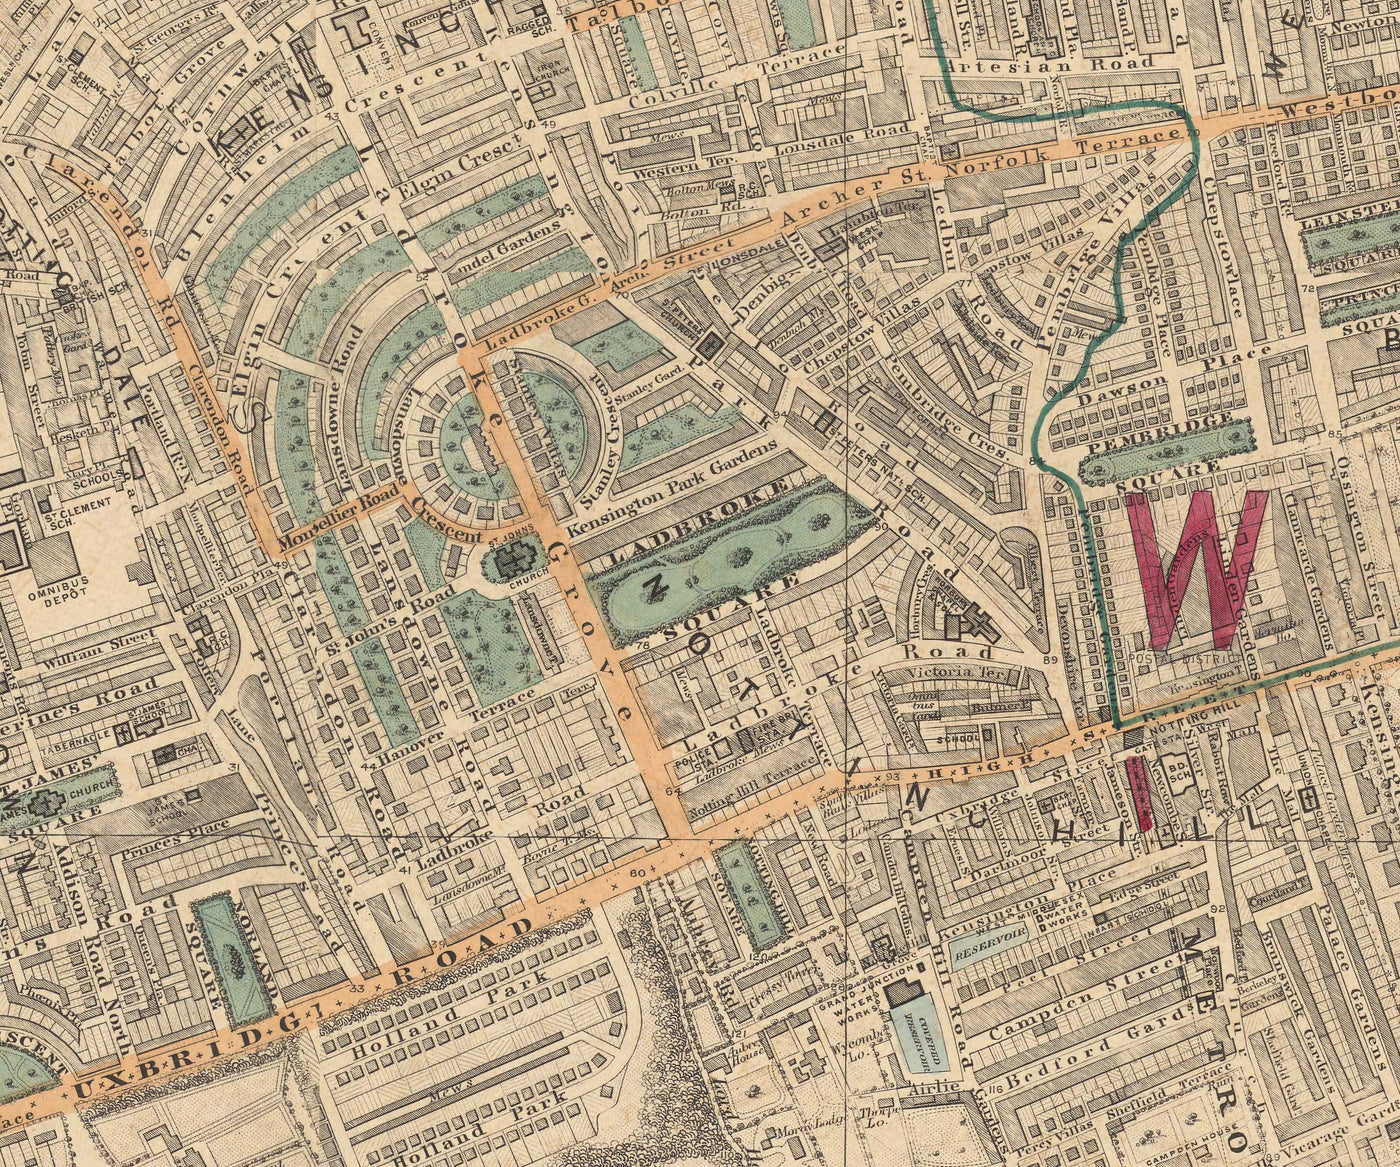 Alte Farbkarte von West London - Notting Hill, Kensington, Portobello Road, Shepherds Bush, Bayswater - W11 W2 W8 SW7 W14 W6 W12 W10